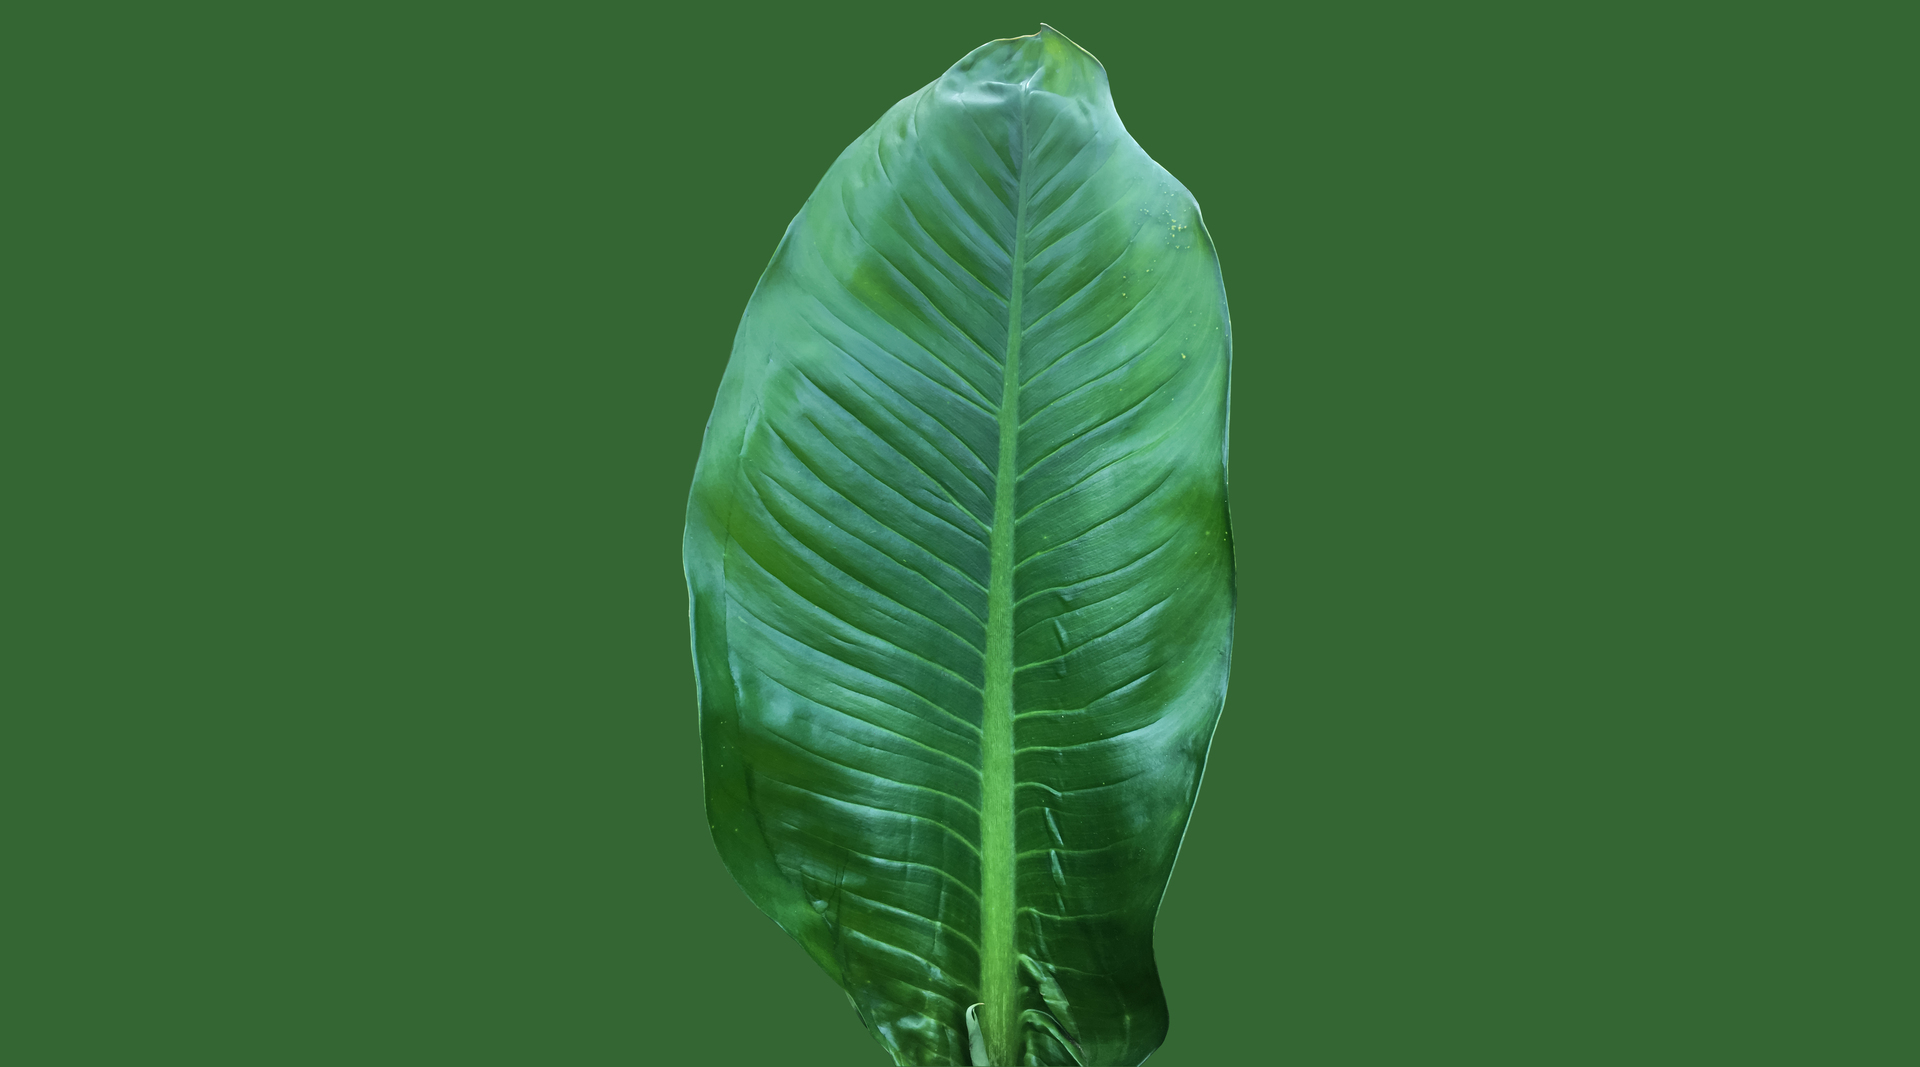 Ten obrazek przedstawia pojedynczy, zielony liść dieffenbachii, który znajduje się na jednolitym, zielonym tle. Liść ten zachwyca swoim intensywnym, jasnym kolorem oraz charakterystycznymi, ciemniejszymi plamami. Jest on duży i gęsto ułożony, co nadaje mu bujnego wyglądu. Całość kompozycji tworzy wrażenie spokoju i harmonii, co sprawia, że zielony liść dieffenbachii na zielonym tle jest idealnym wyborem do dekoracji wnętrz oraz do wykorzystania w projektach związanych z florystyką i ogrodnictwem.